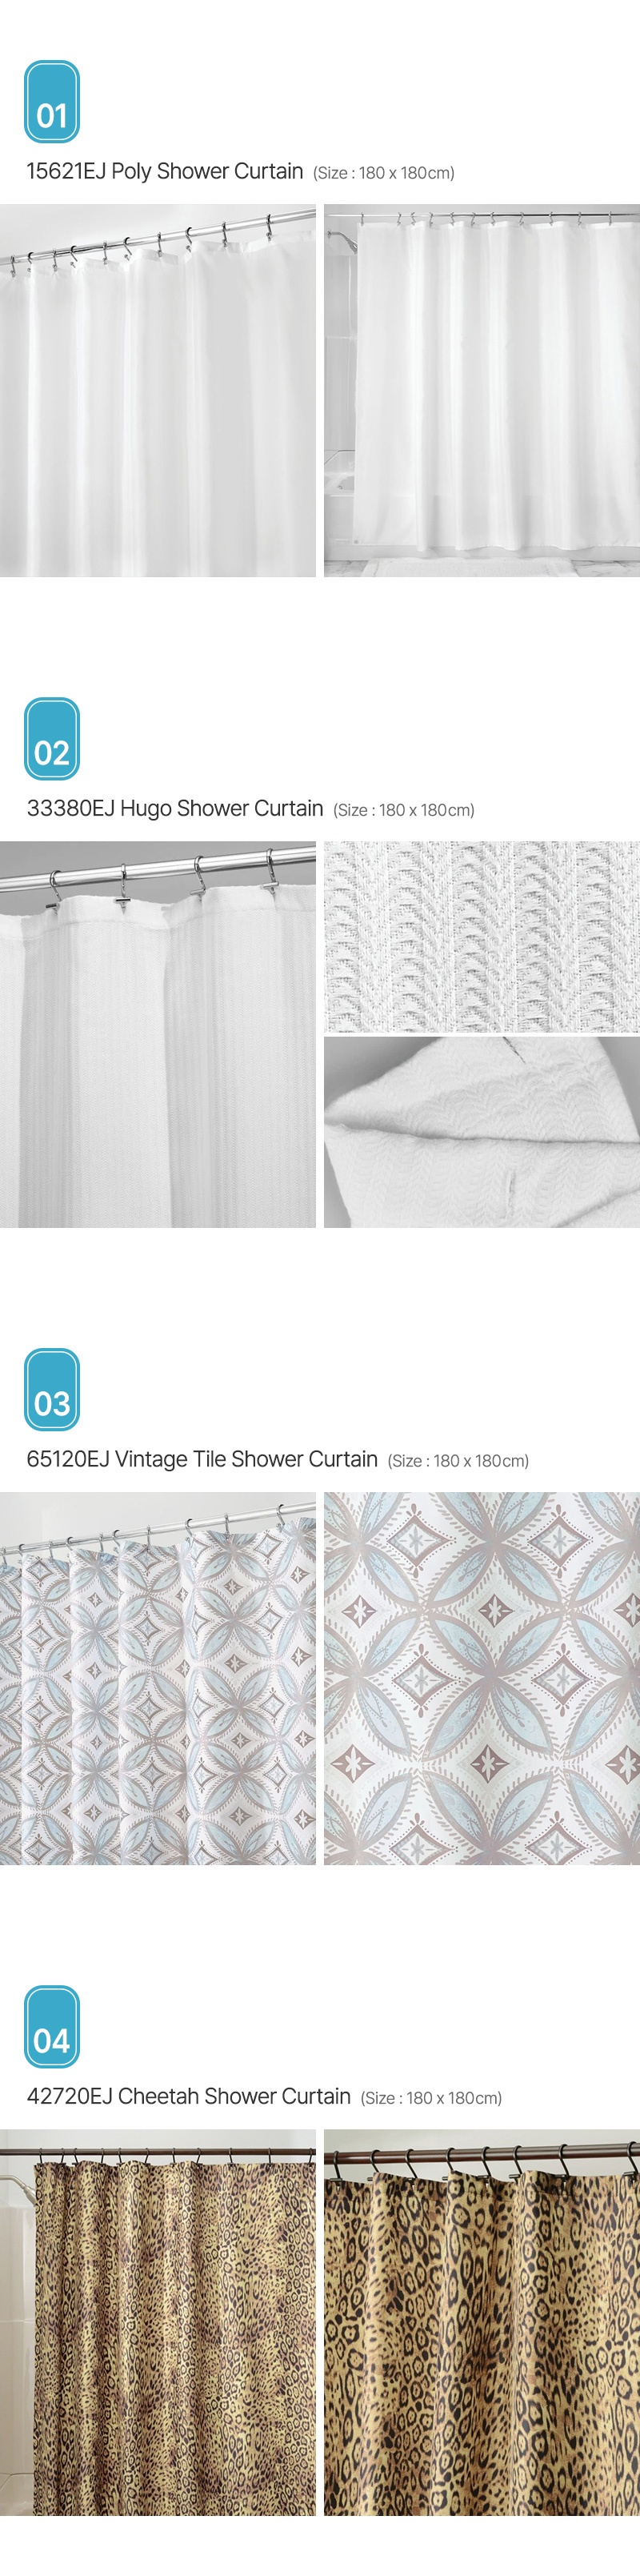 Aria_Shower-Curtain_01.jpg